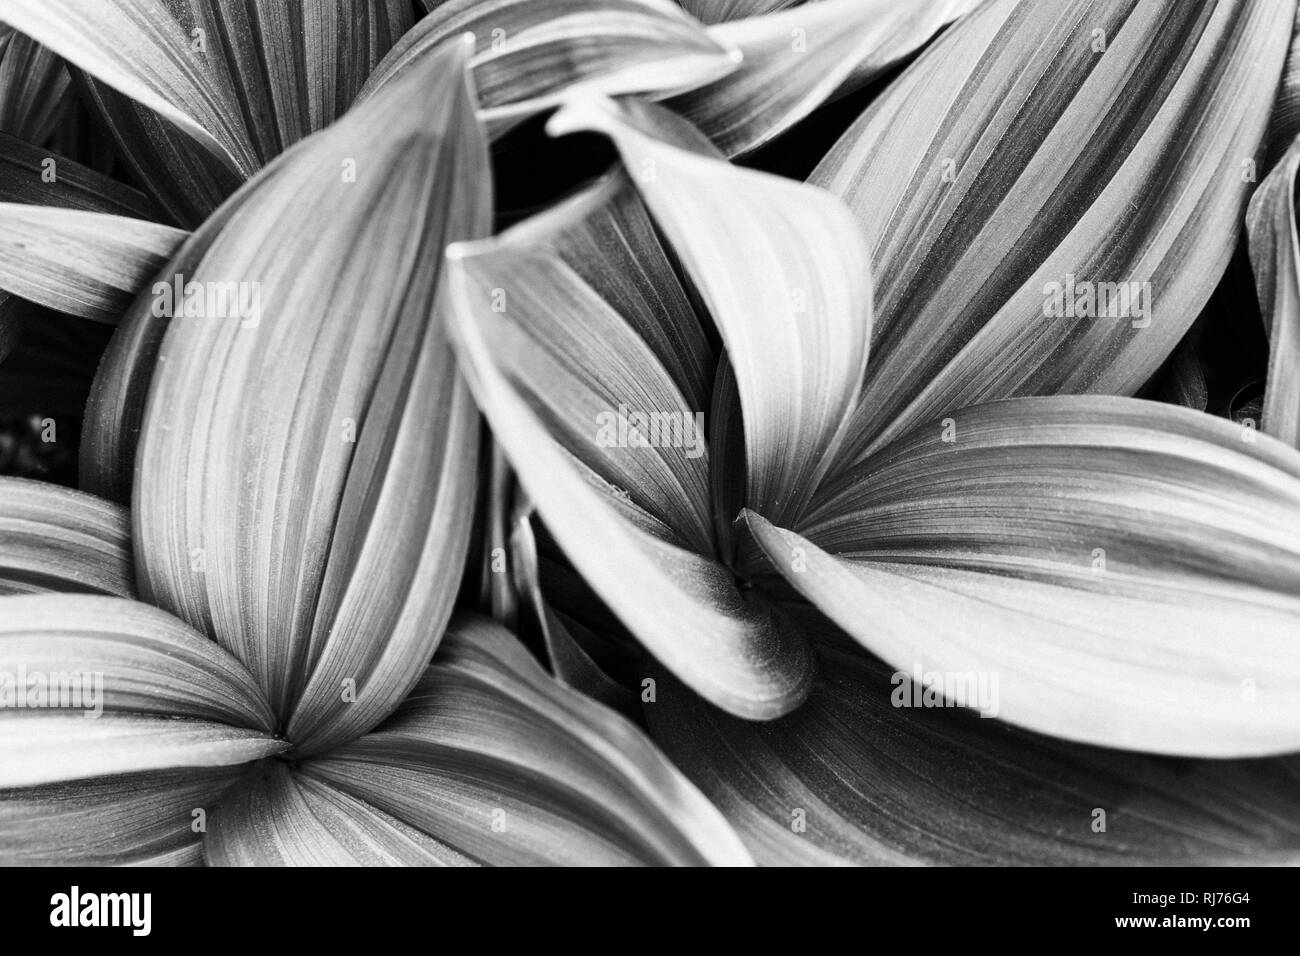 Zierpflanze, gestreifte Blätter in unterschiedlichen Graustufen, Muster, Hintergrund, Foto Stock